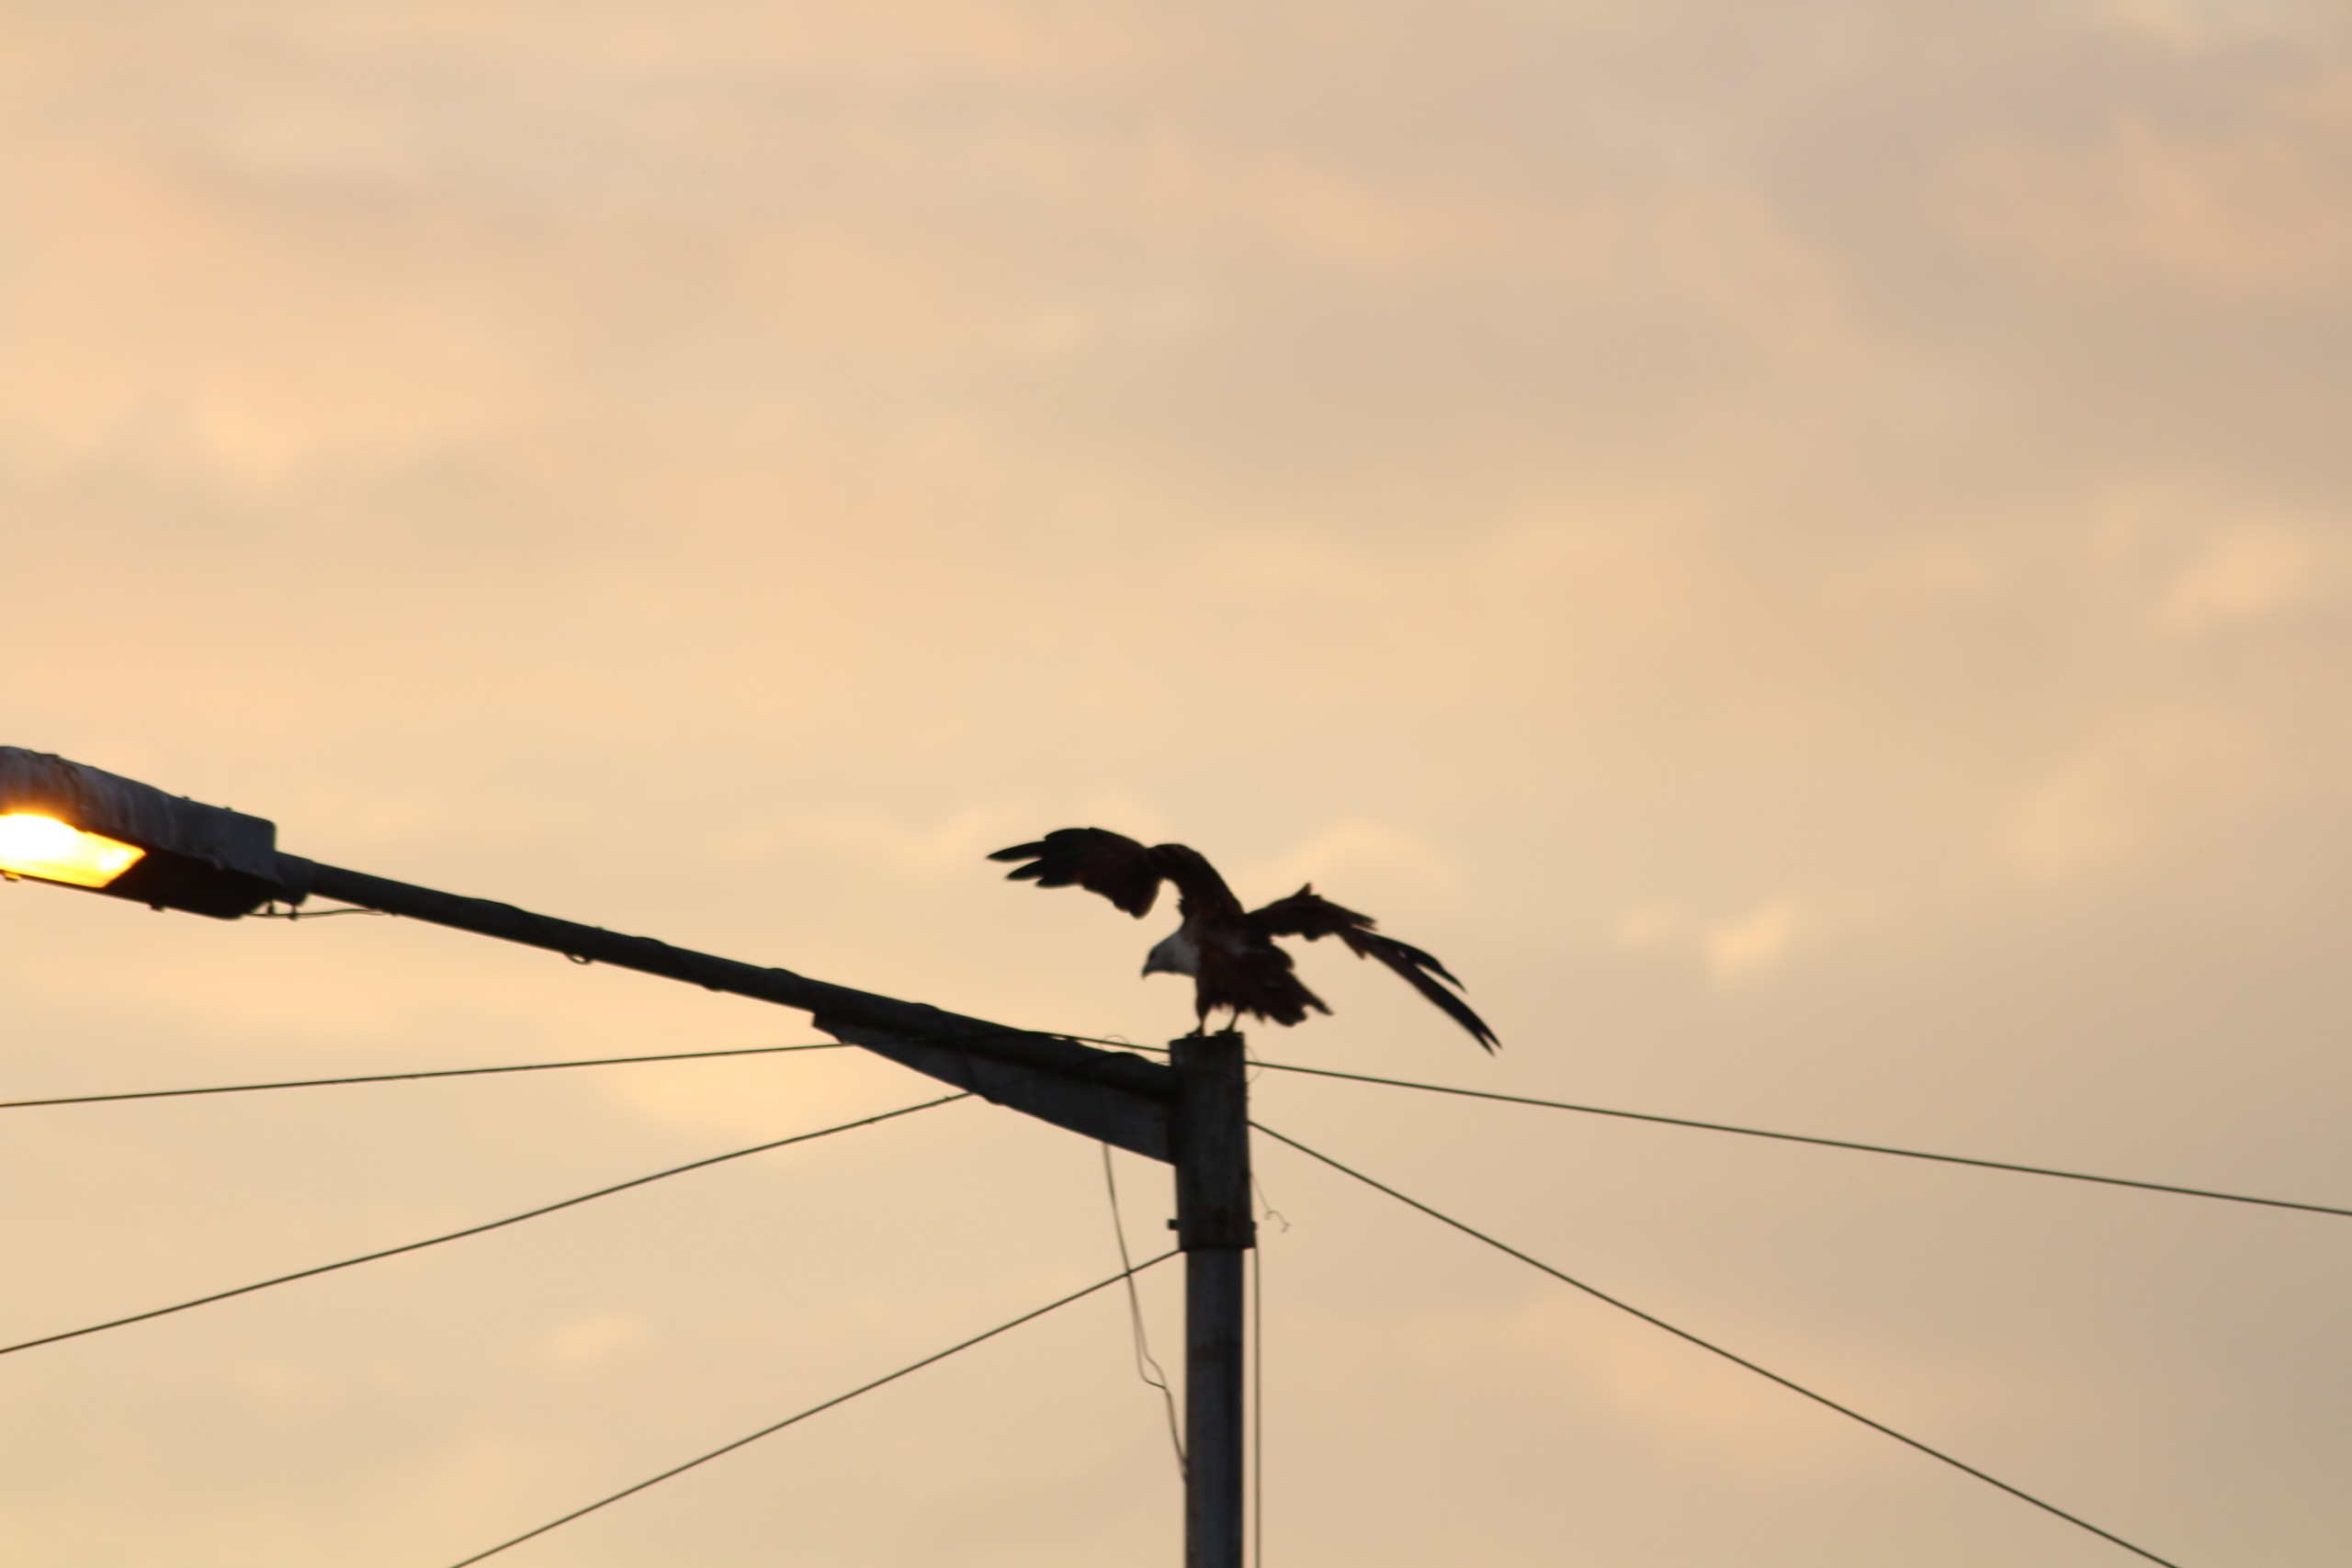 A bird on a light pole